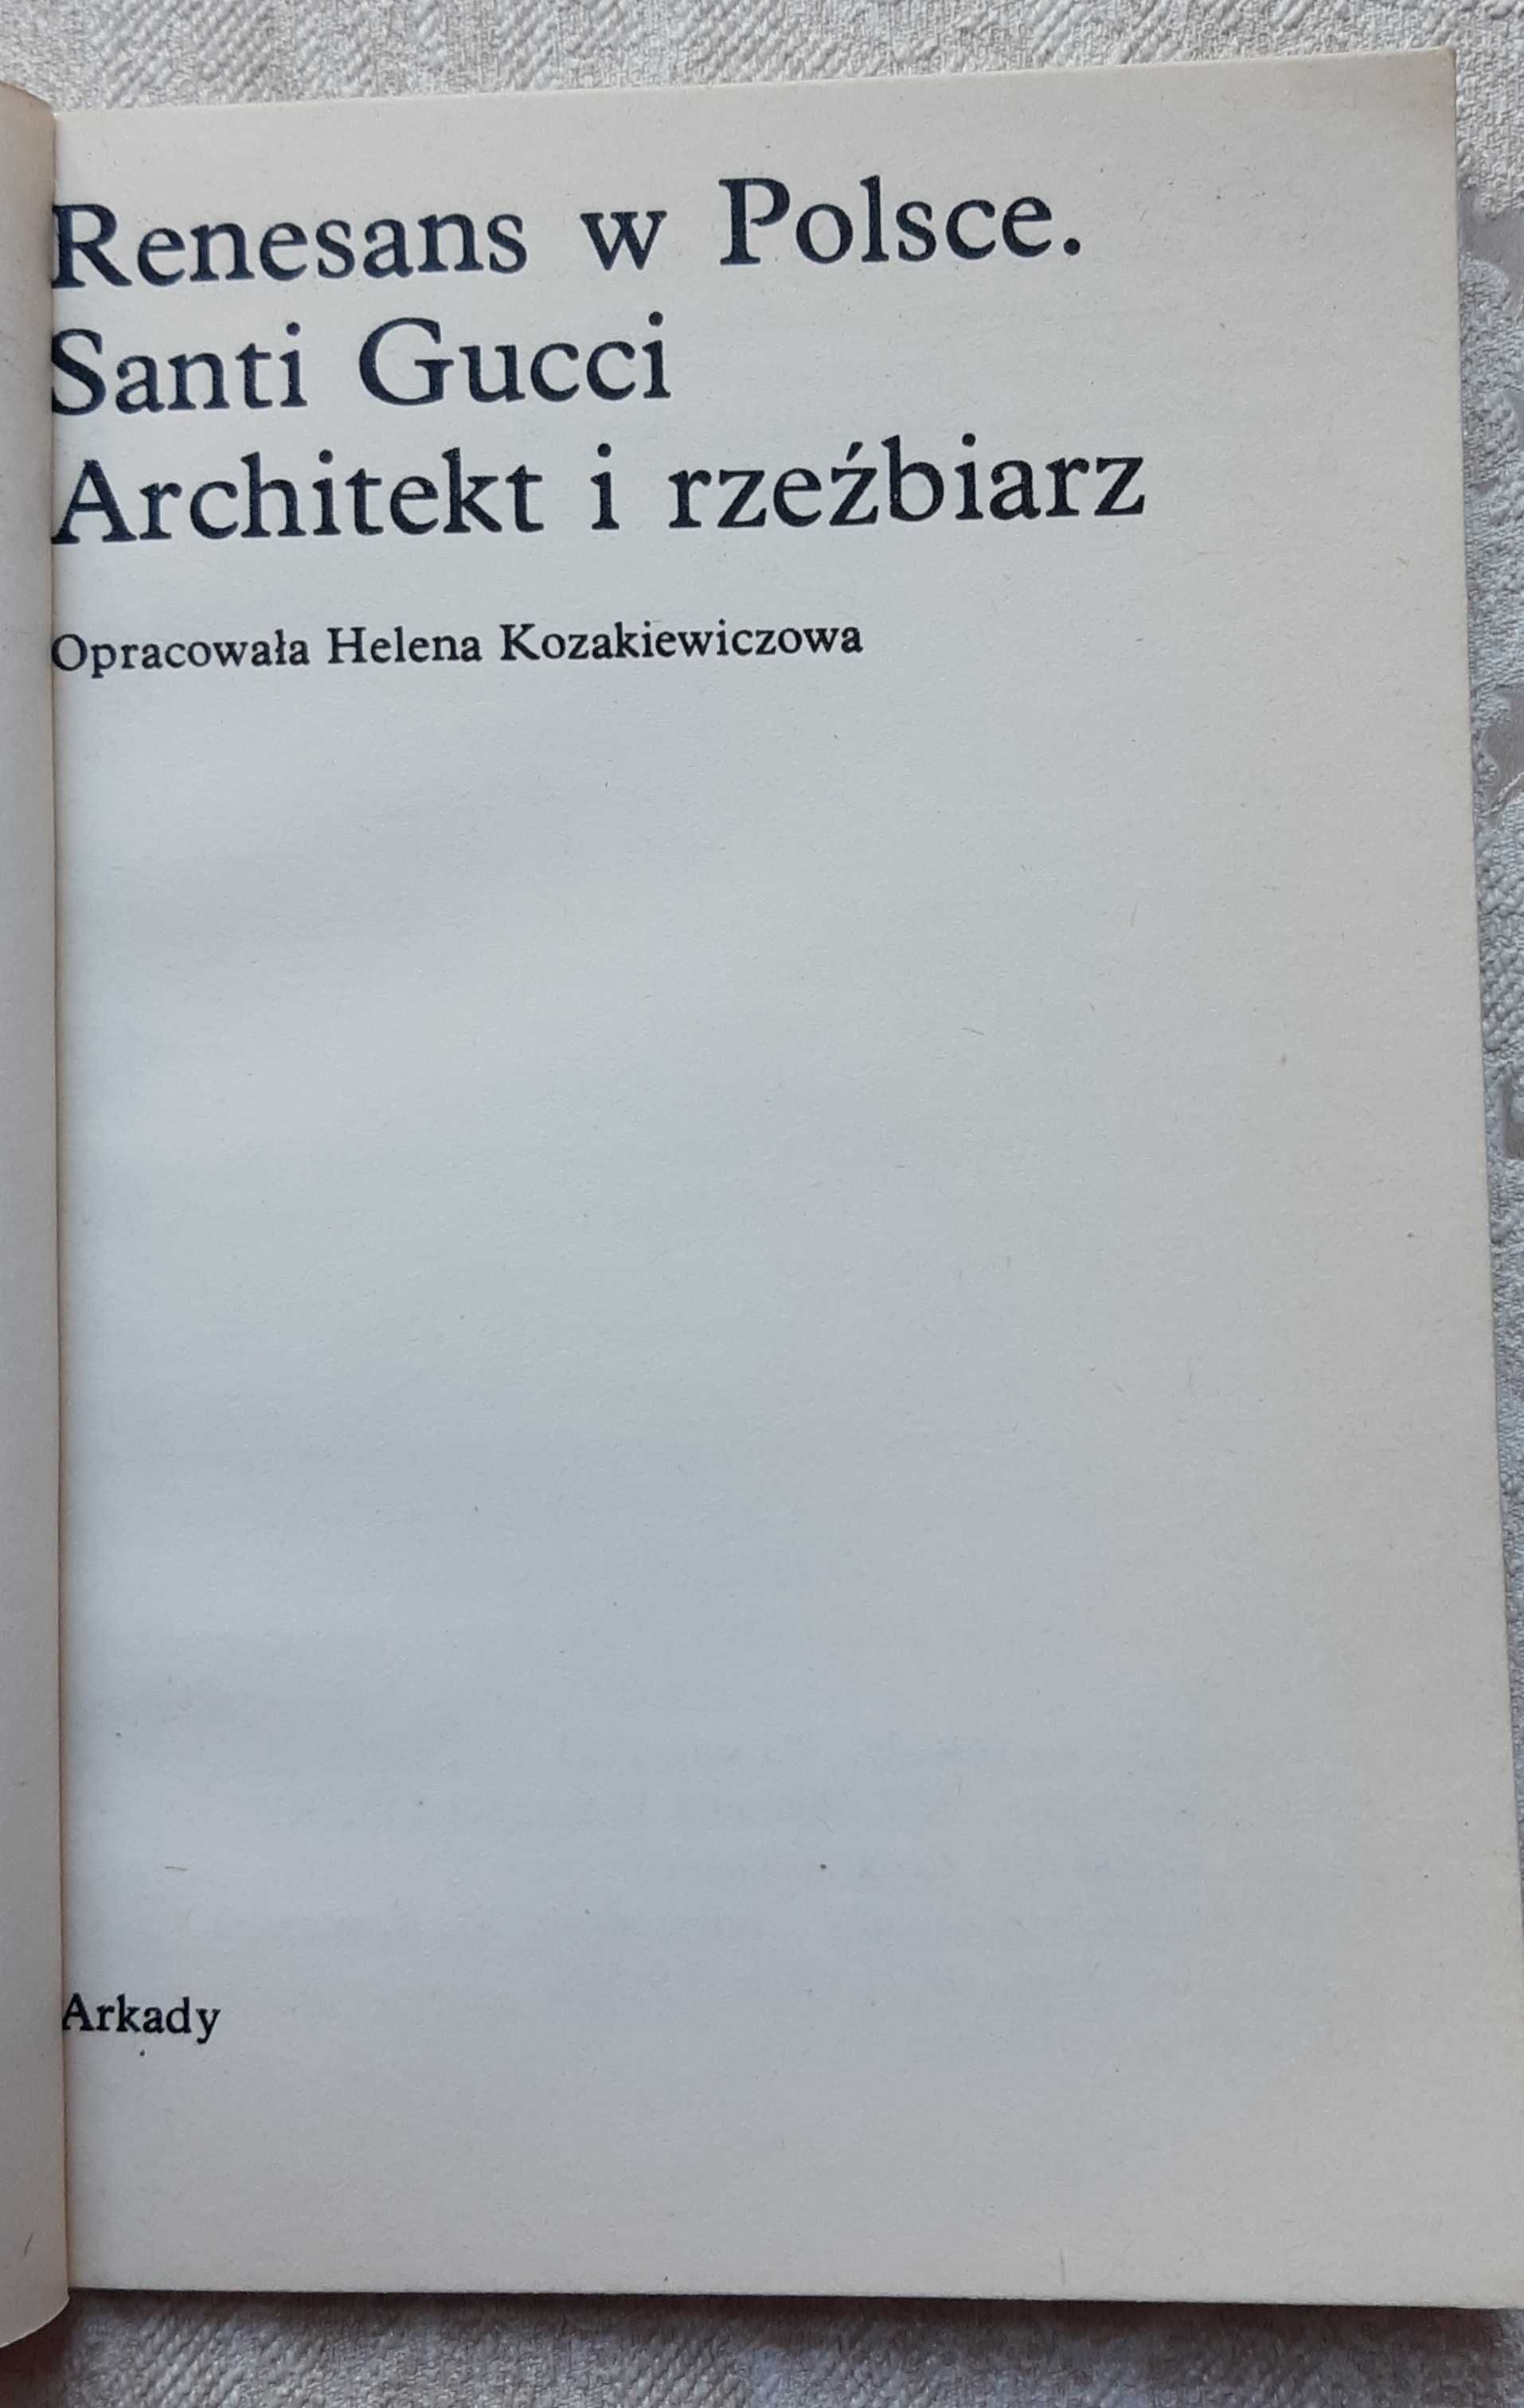 Książka "Renesans w Polsce Santi Gucci architekt i rzeźbiarz"